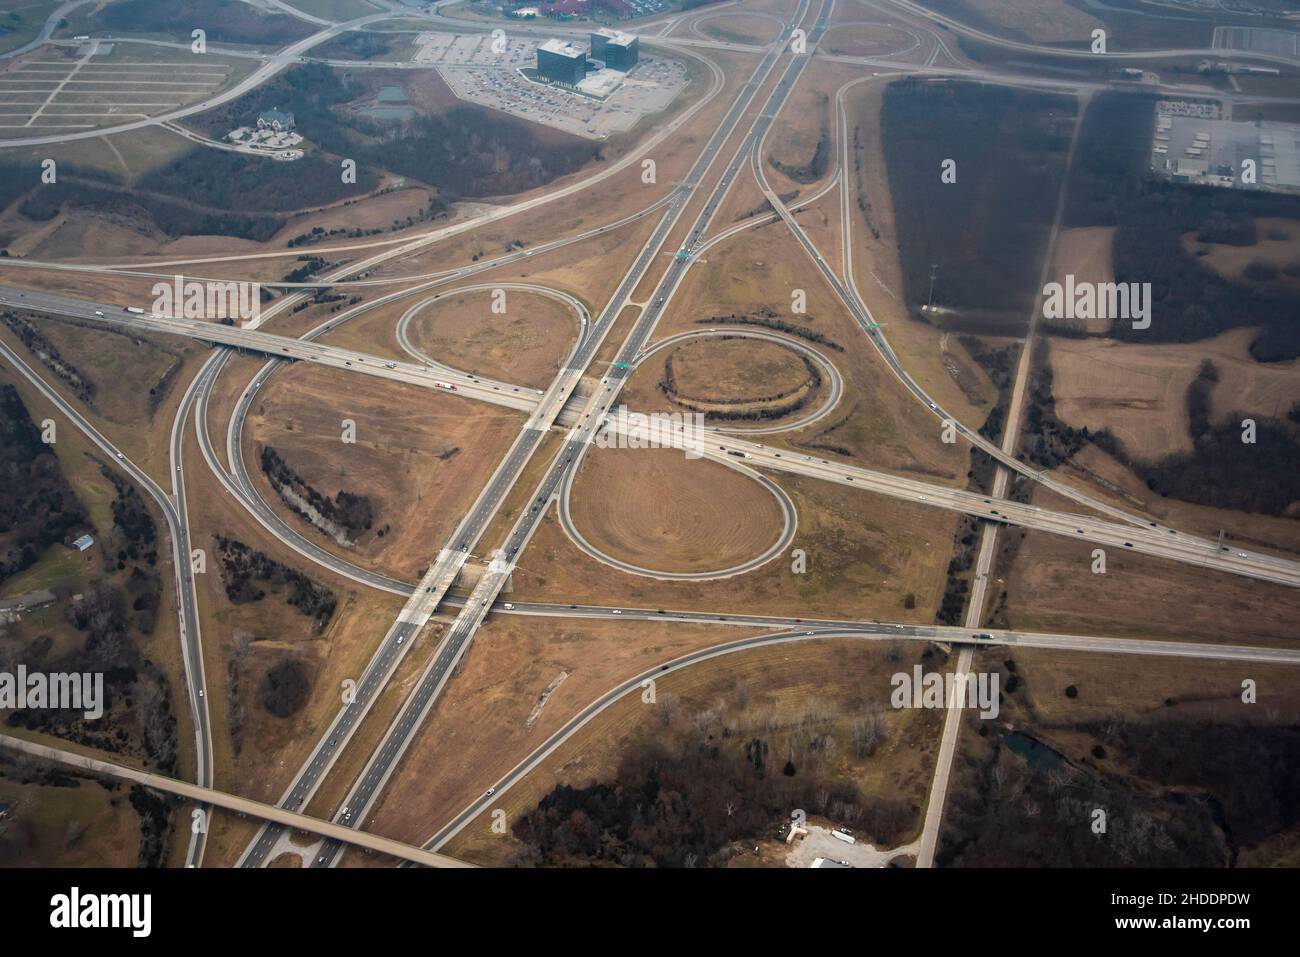 Kansas City, Kansas.Vue aérienne d'un trèfle à trois feuilles montrant l'Interstate 435 et l'I 70.Aussi montrant le campus continental de cerner Corp et le Hote d'Ascend Banque D'Images